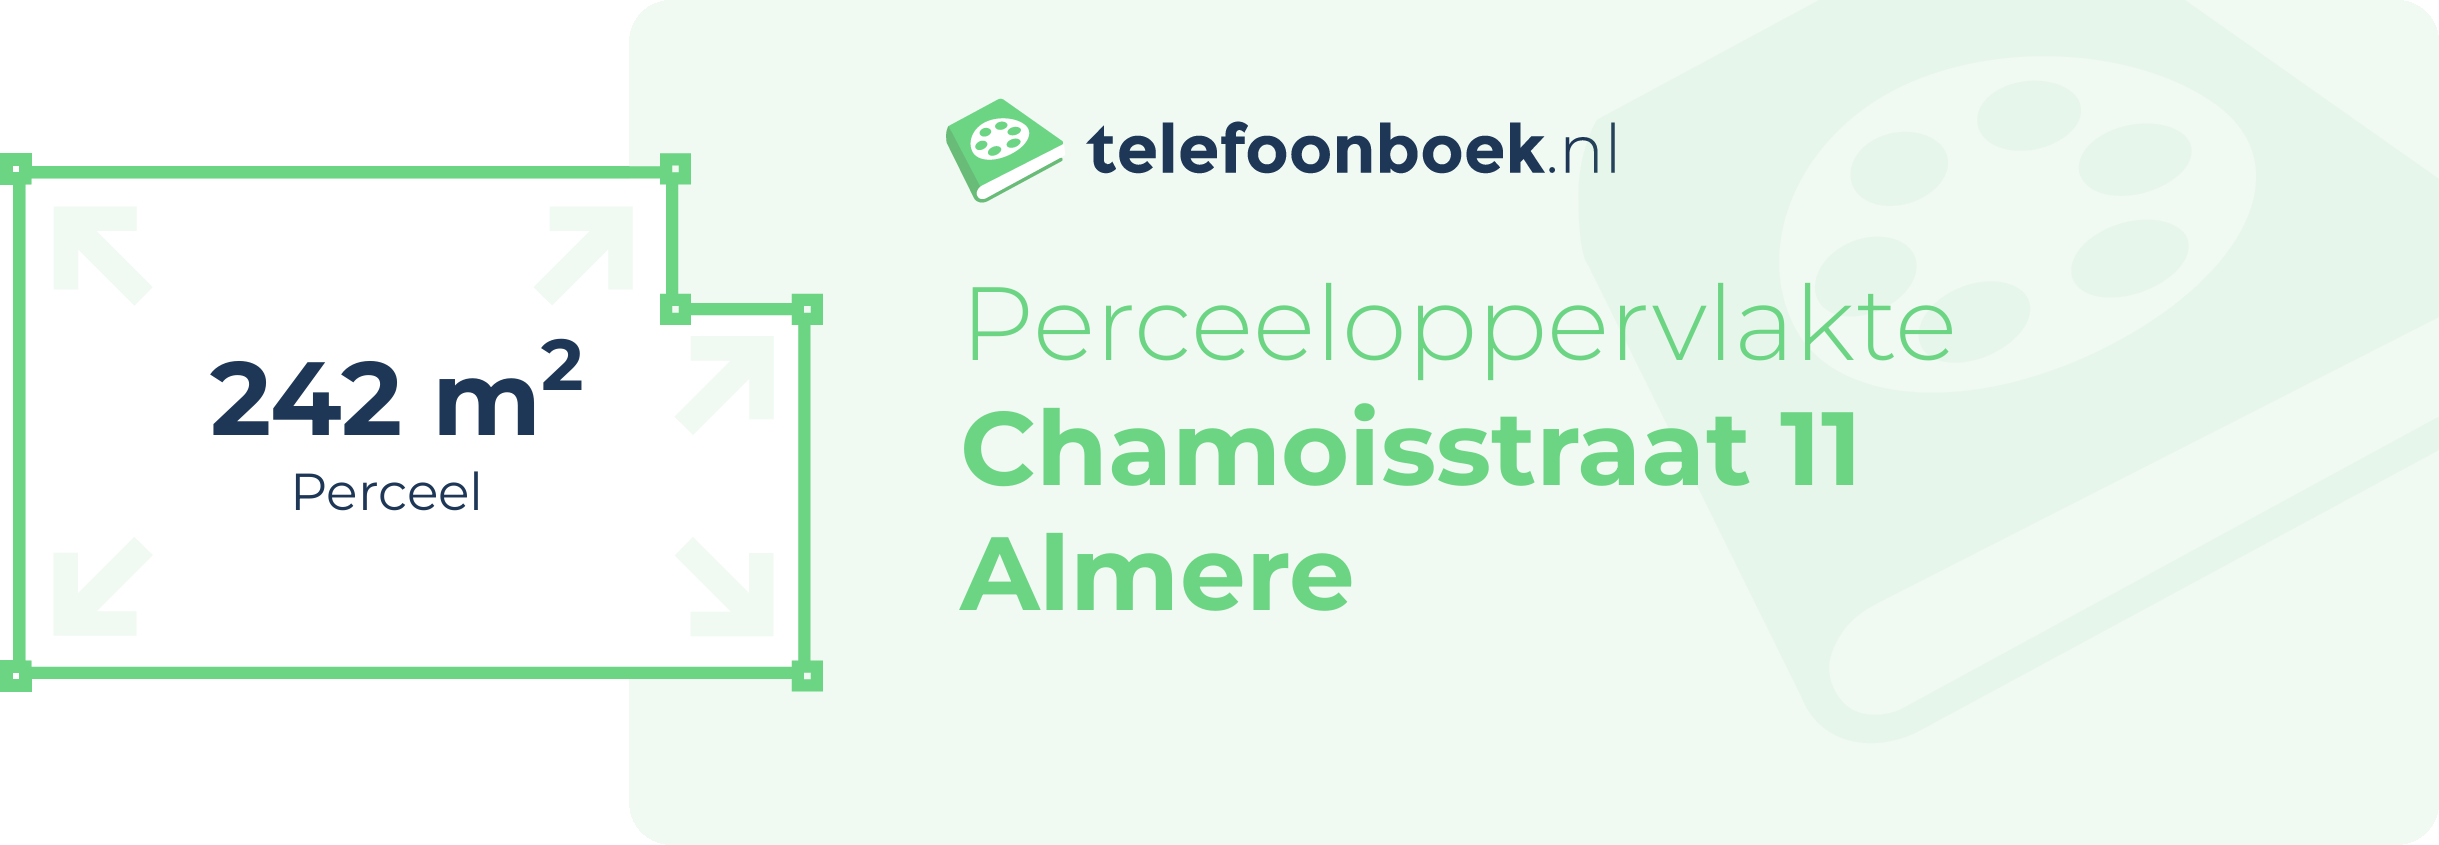 Perceeloppervlakte Chamoisstraat 11 Almere